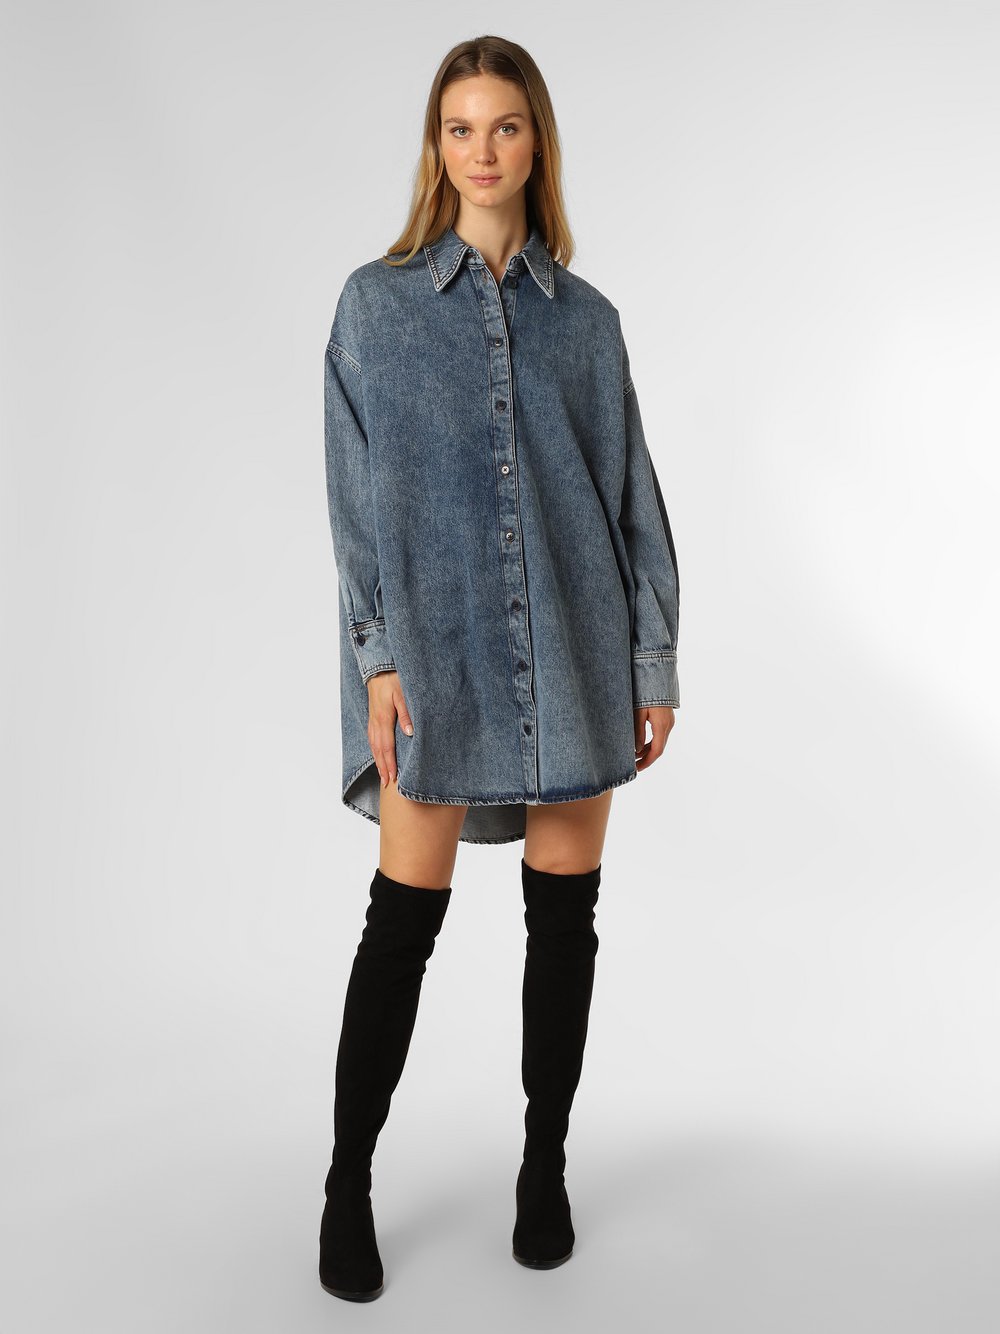 Drykorn - Damska sukienka jeansowa – Ceara, niebieski